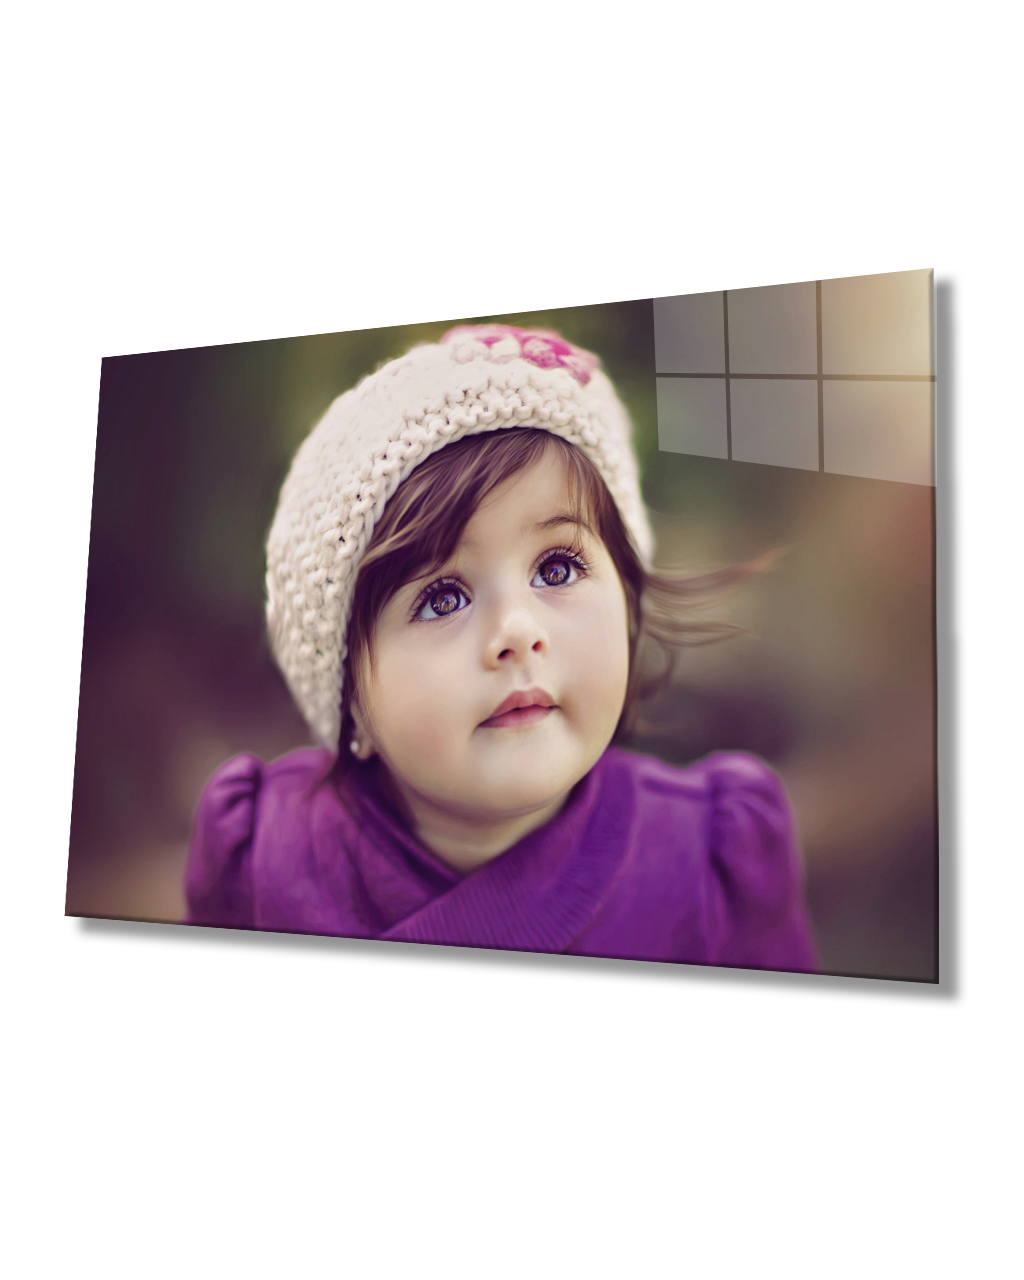 Şapkalı Çocuk Cam Tablo  4mm Dayanıklı Temperli Cam Child Glass Table With Hat 4mm Durable Tempered Glass